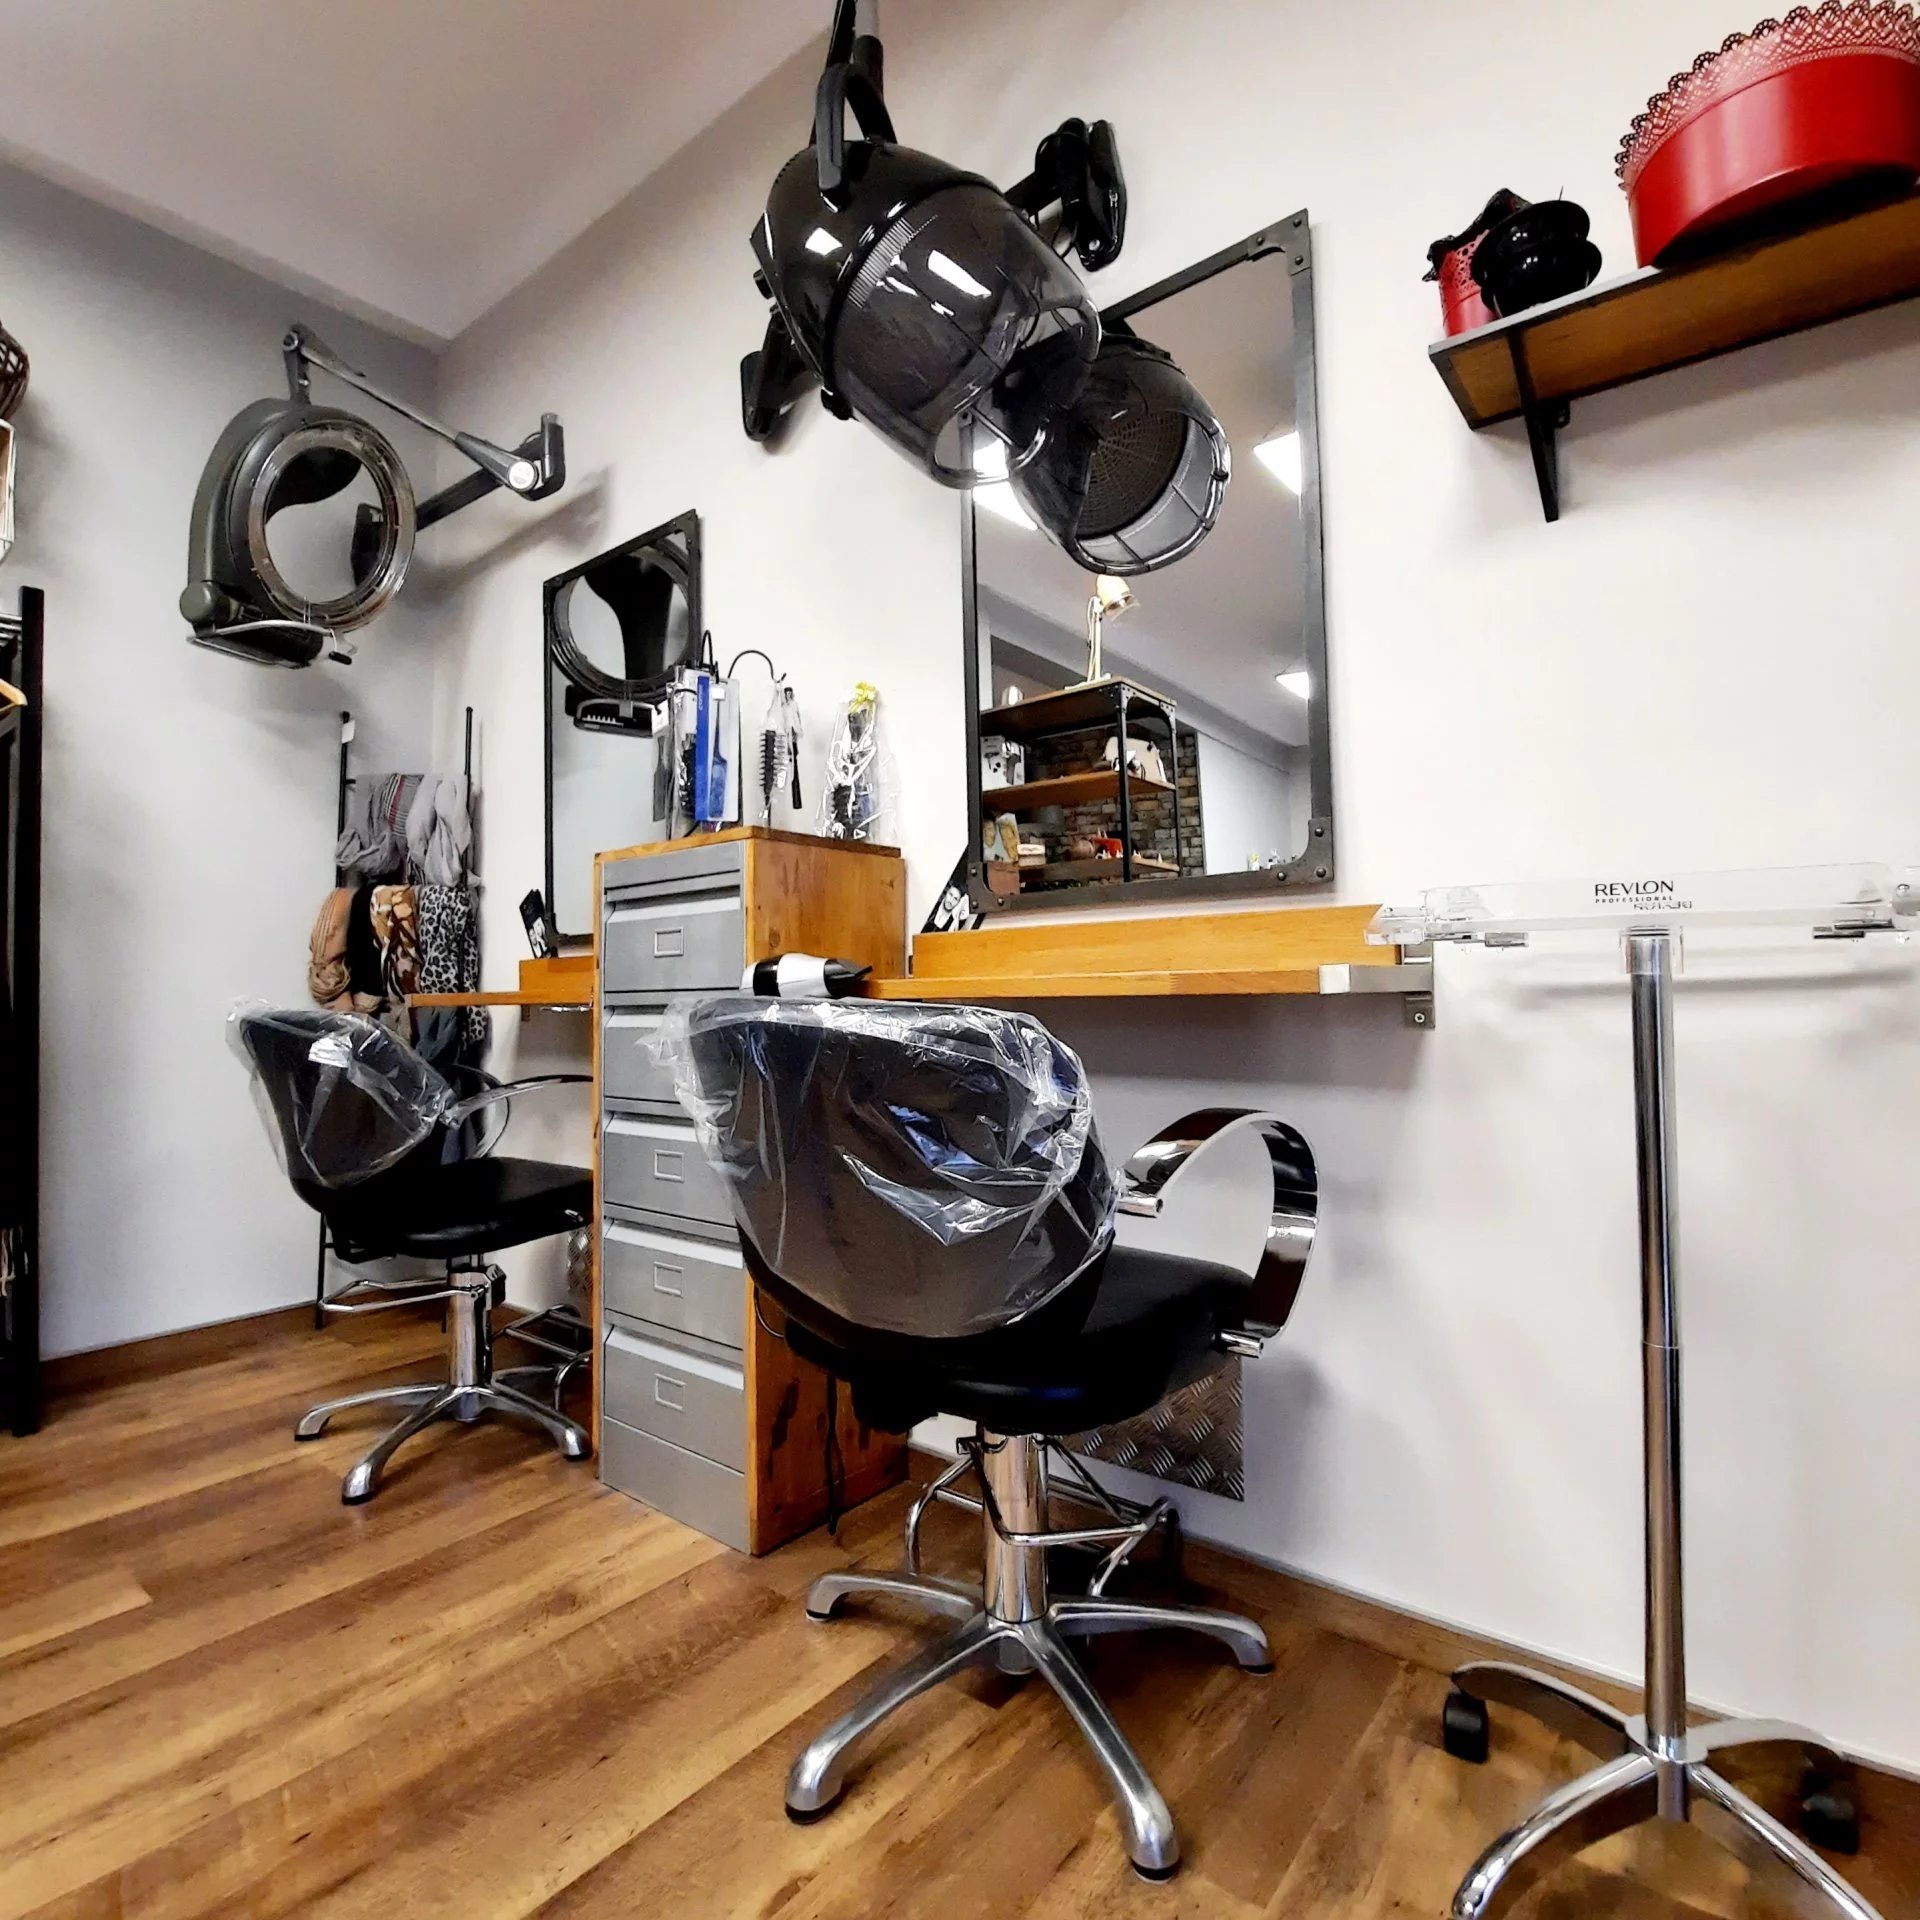 Fonds de commerce salon de coiffure Sotteville-Lès-Rouen